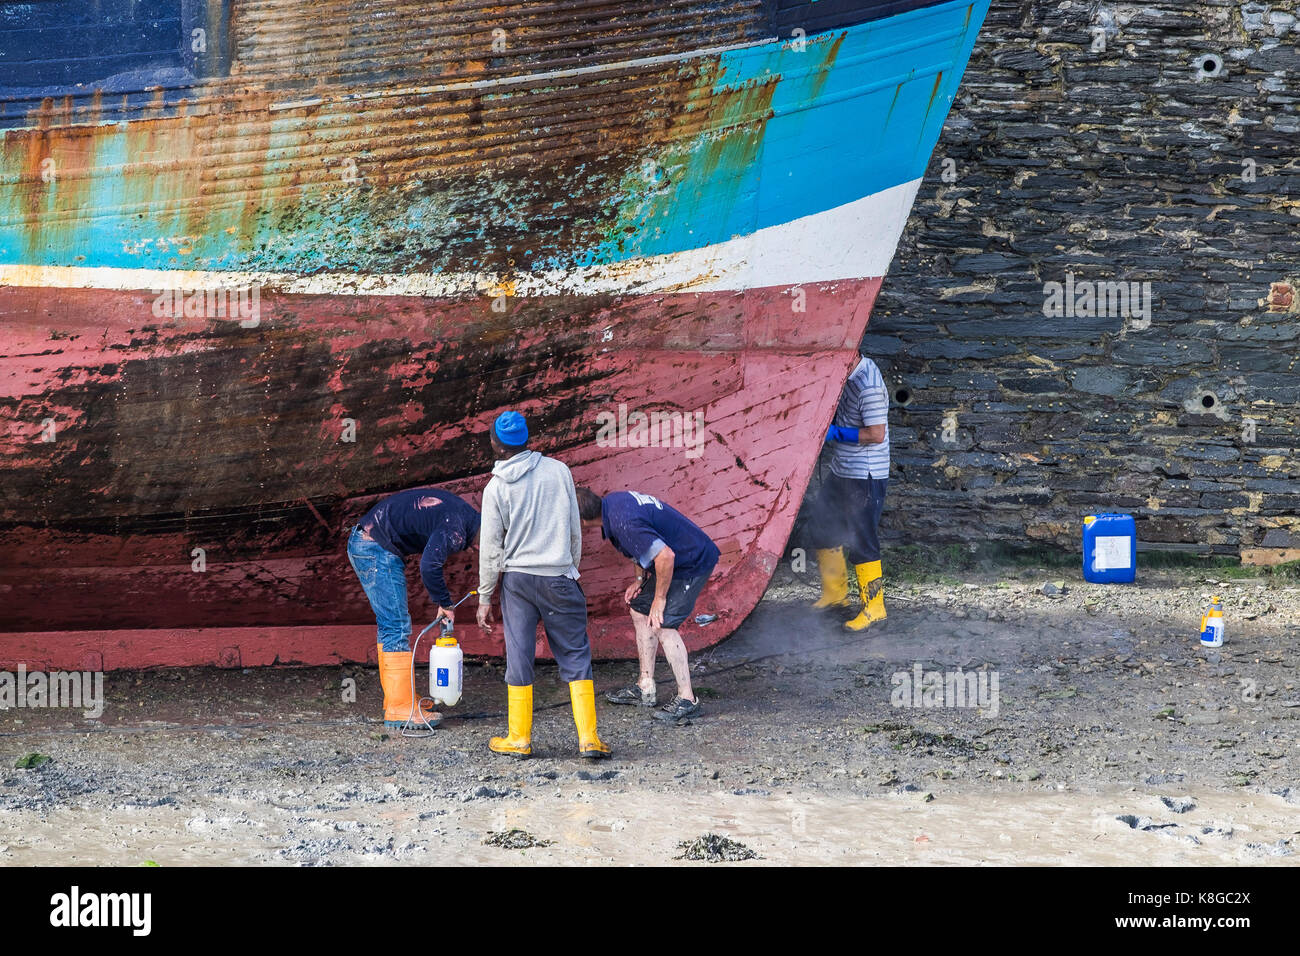 - Los trabajadores de la industria pesquera de inspeccionar el casco de la pesca de arrastre en la marea baja en Padstow Harbour en el norte de la costa de Cornwall. Foto de stock